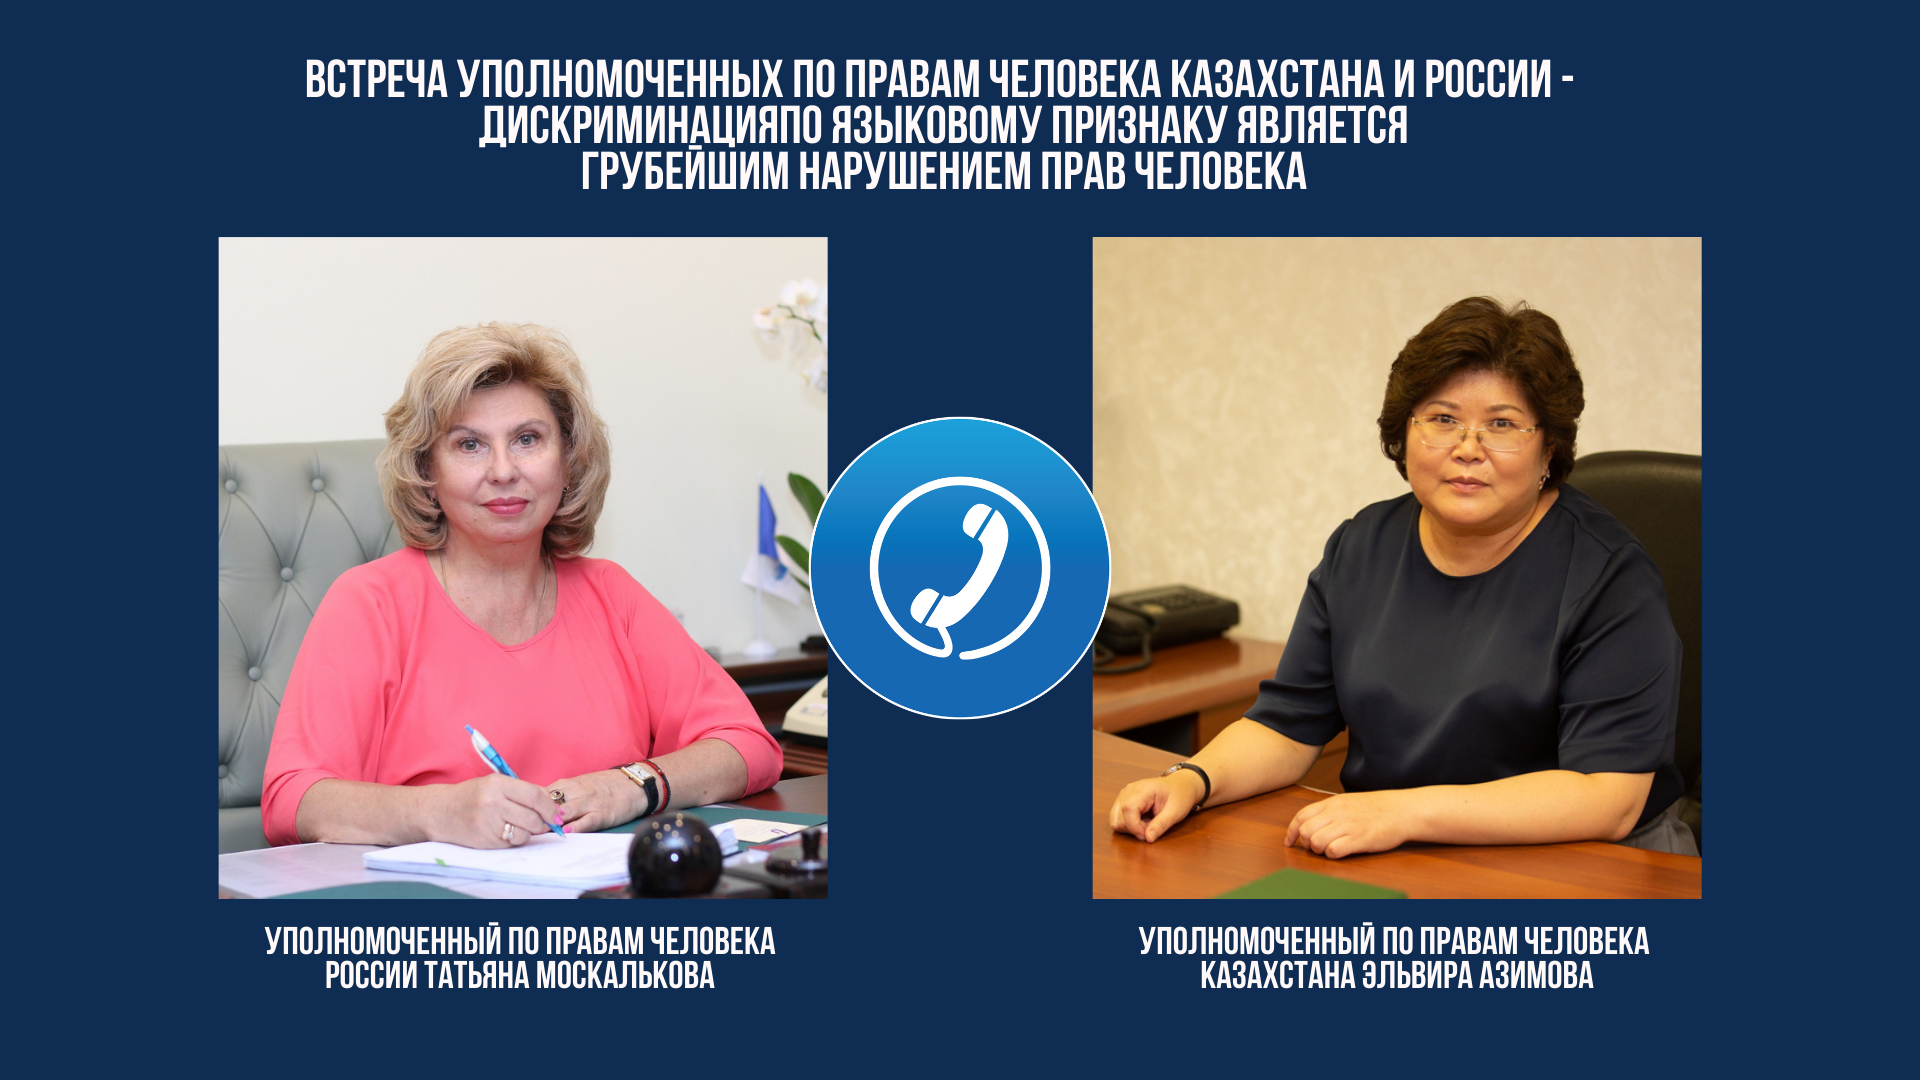 Встреча Уполномоченных по правам человека Казахстана и России - дискриминация по языковому признаку является грубейшим нарушением прав человека